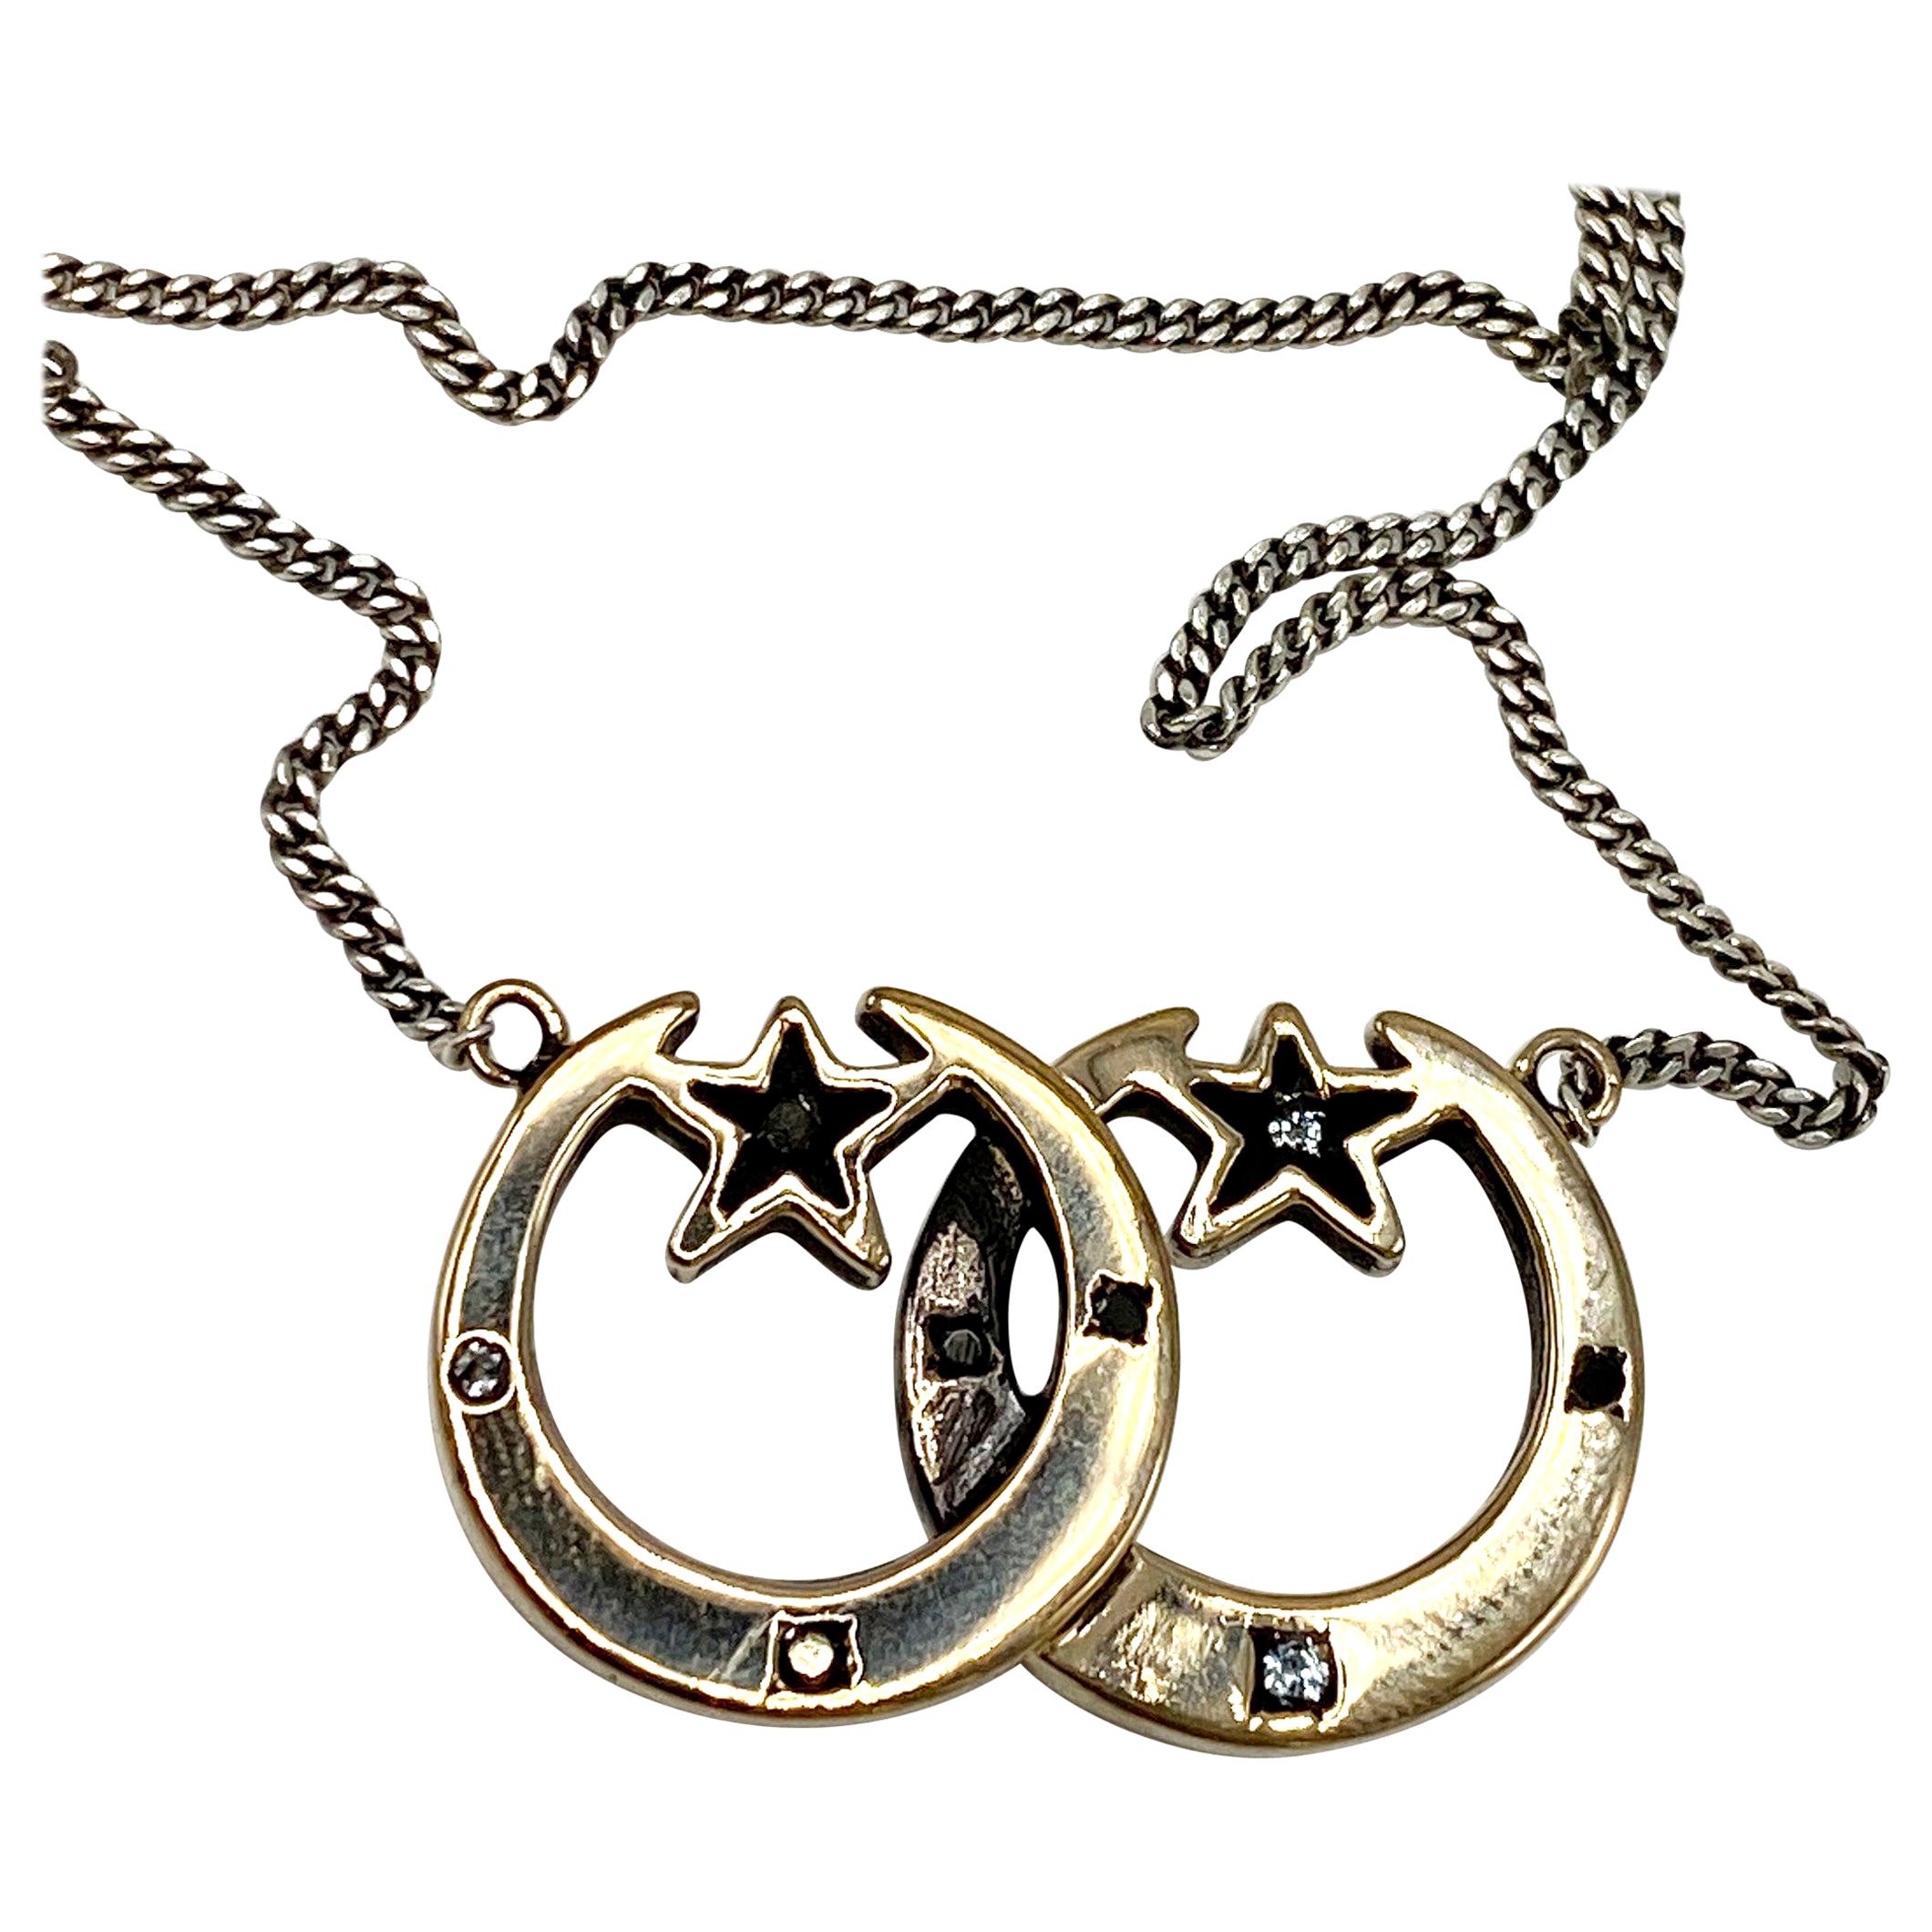 Mondsichel Stern Aquamarin Schwarzer Diamant Halskette Vergoldeter Anhänger Silberkette J DAUPHIN
Sie können diesen Stil mit Gold gefüllt Halskette in jeder Länge, die Sie wollen - senden Sie uns einfach eine dm.

J DAUPHIN  Hergestellt mit einer